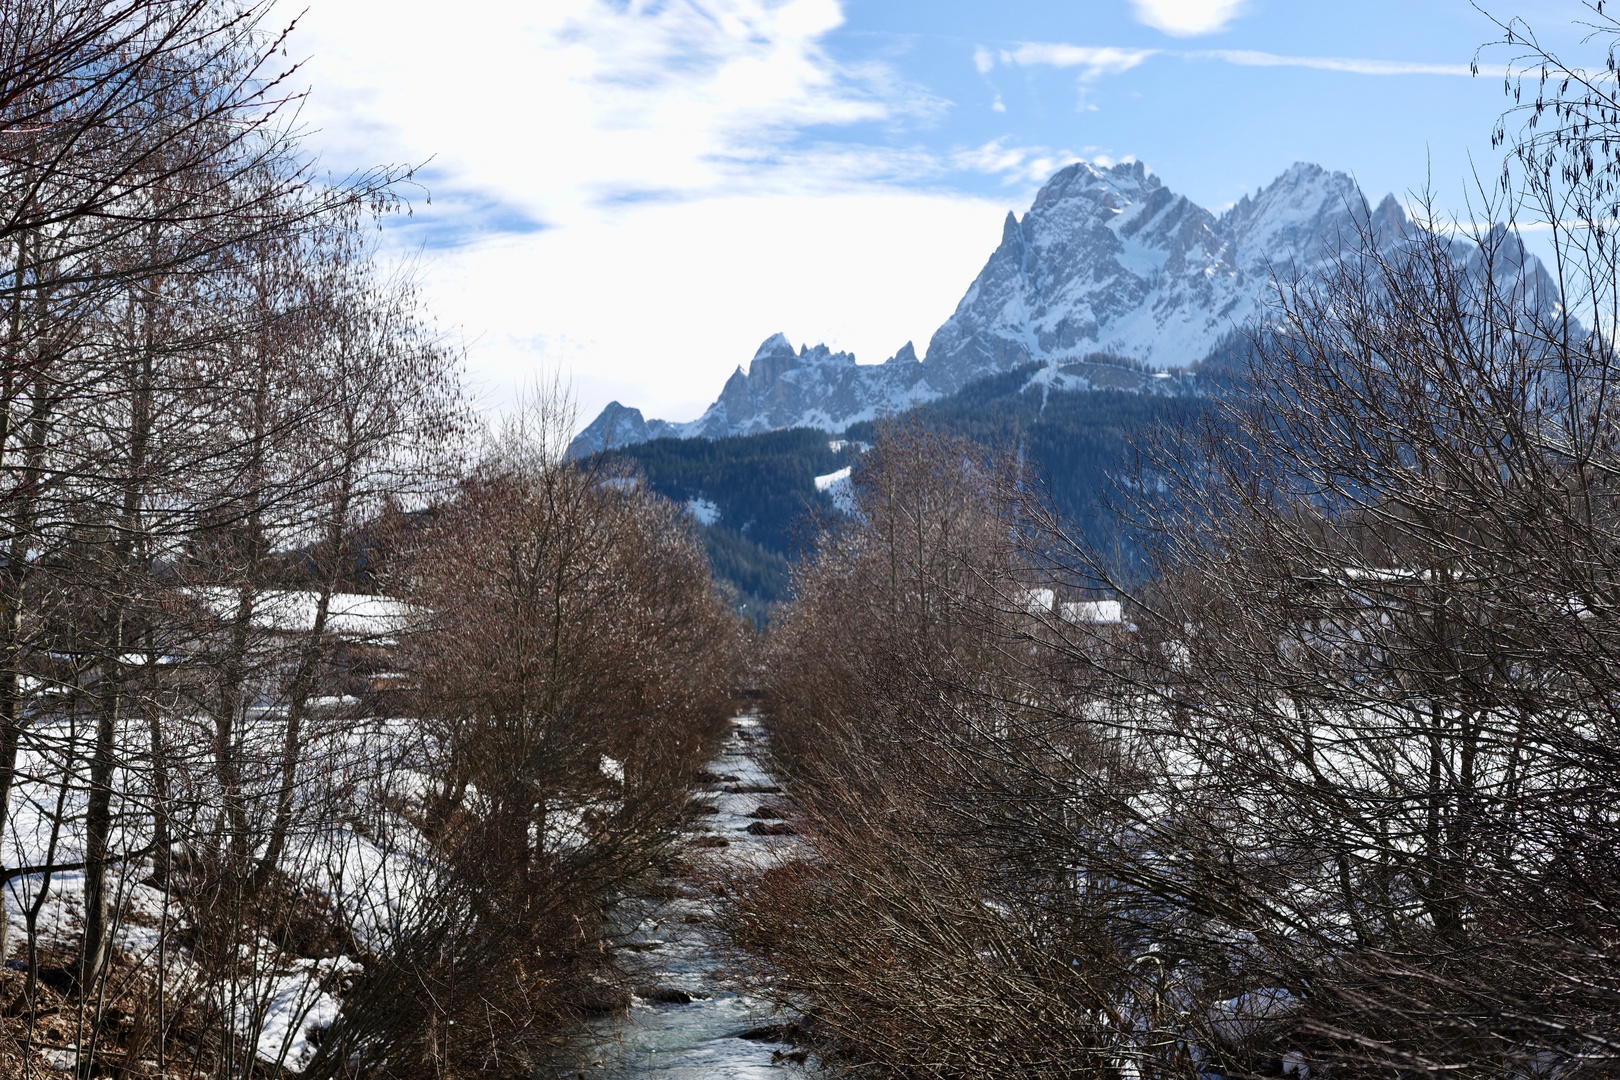 Die Dolomiten Mitte Februar 2020 / 3 Monate ohne Schneefall